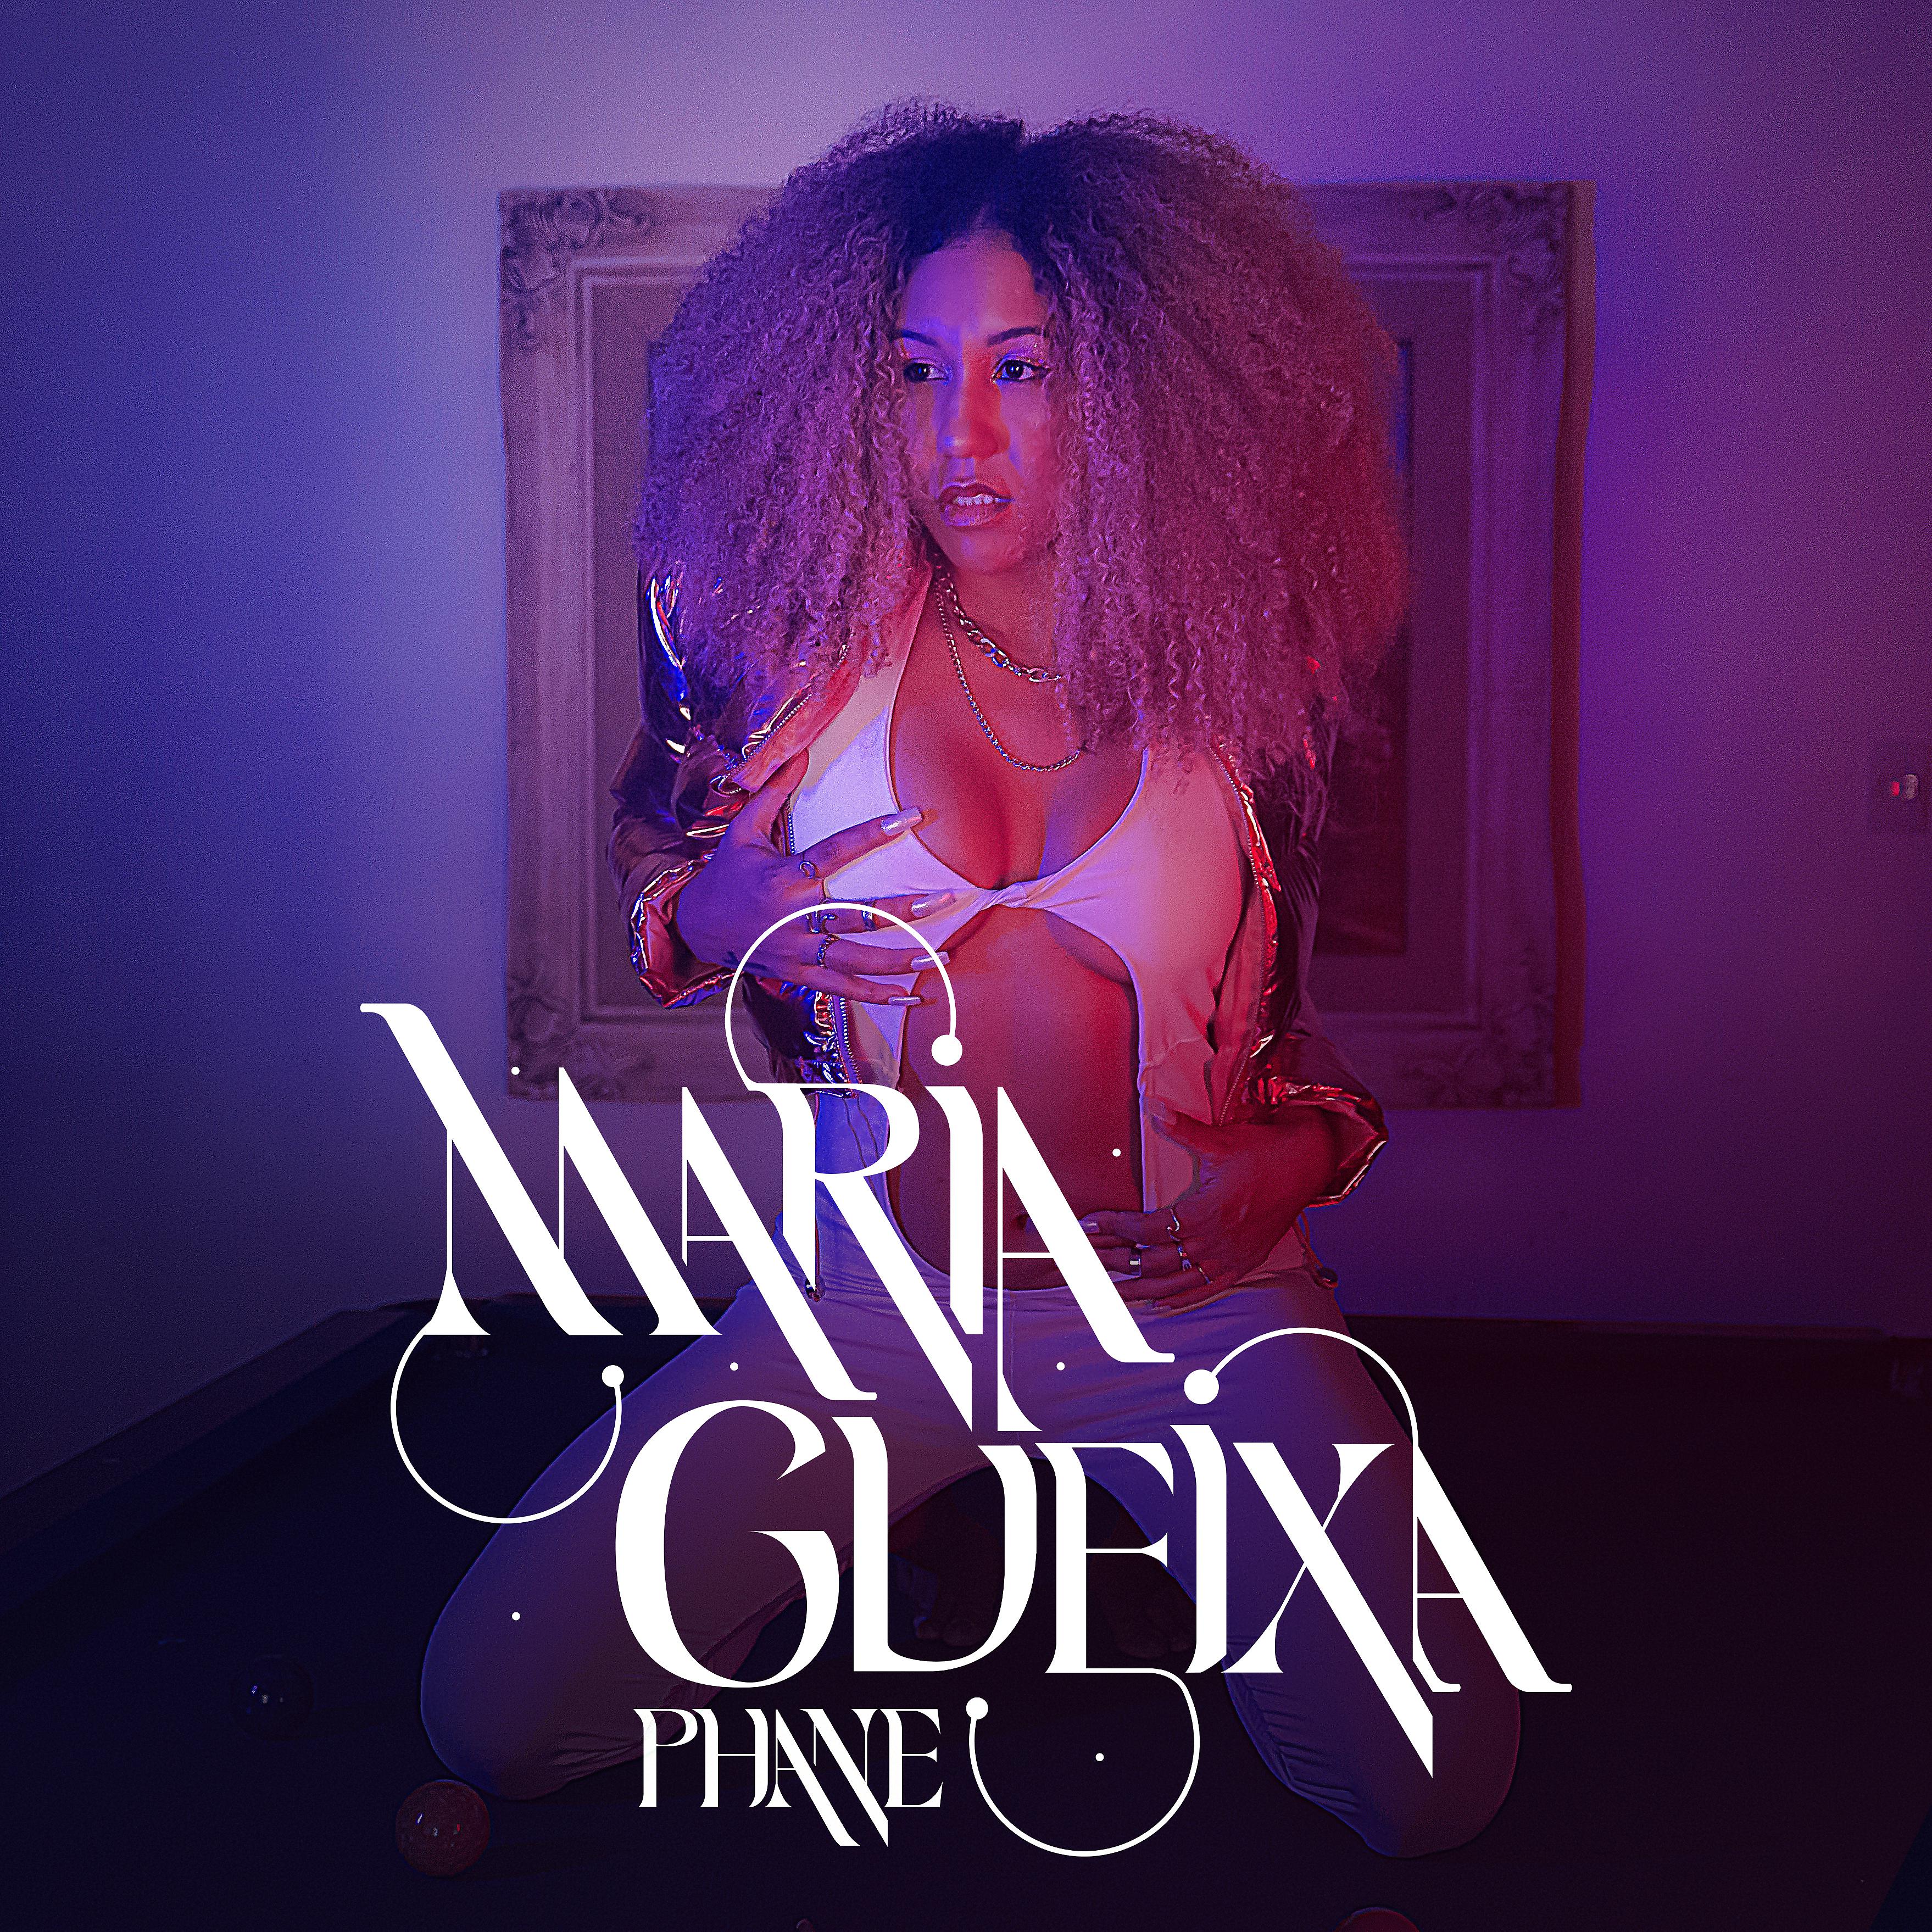 Постер альбома Maria Gueixa